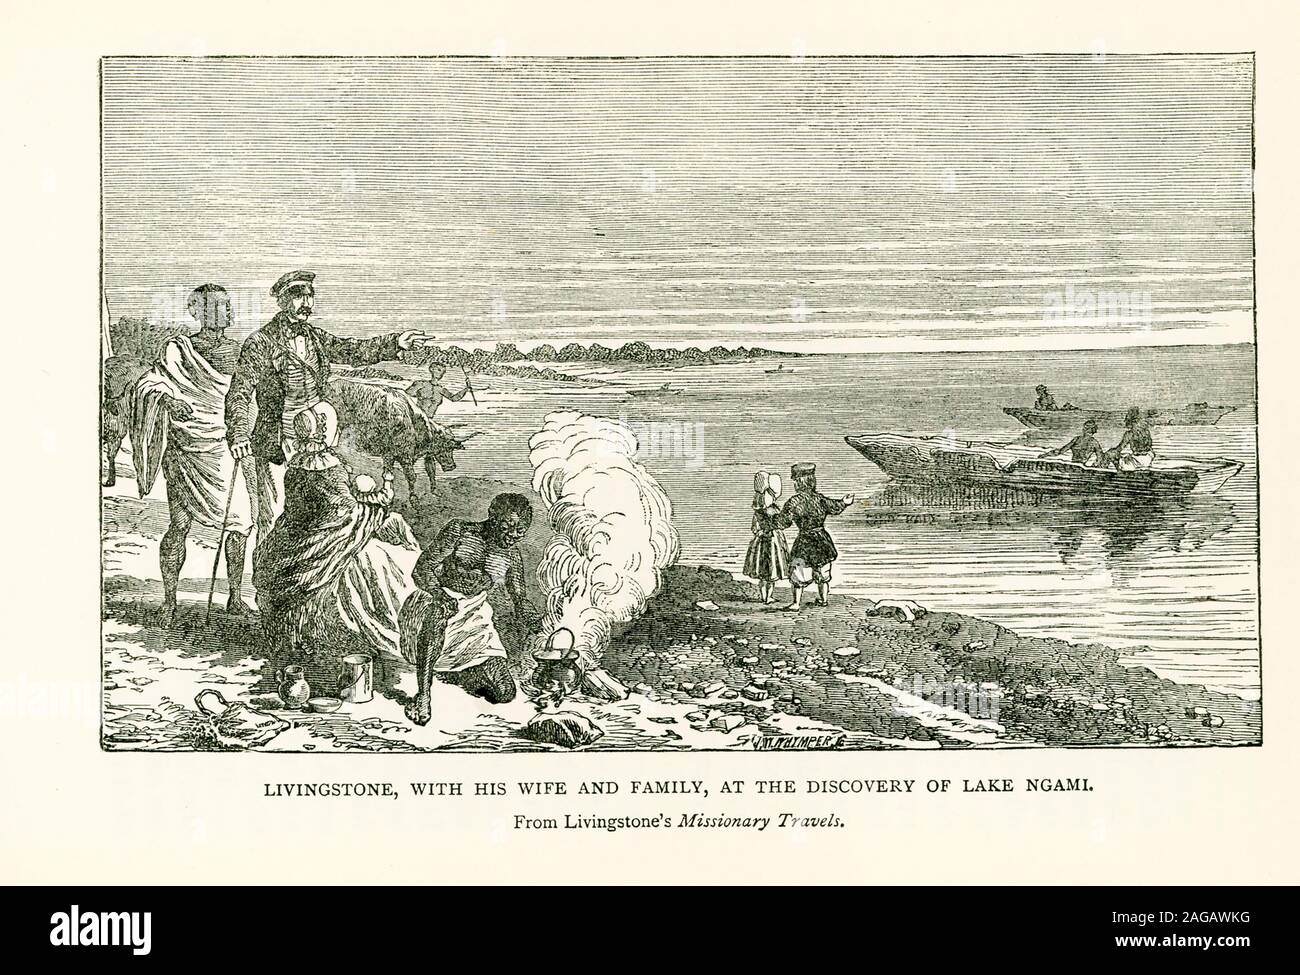 Cette illustration est de Livingstone voyages missionnaires. Il montre Livingstone, avec sa femme et sa famille, à la découverte du lac Ngami. David Livingstone est un médecin écossais, congrégationalistes, pionnier et missionnaire chrétien avec la Société Missionnaire de Londres, un explorateur en Afrique, et l'un des plus populaires British héros de la fin du xixe siècle l'ère victorienne. Livingstone meurt en 1873. Il était au lac Ngami en 1849. Banque D'Images